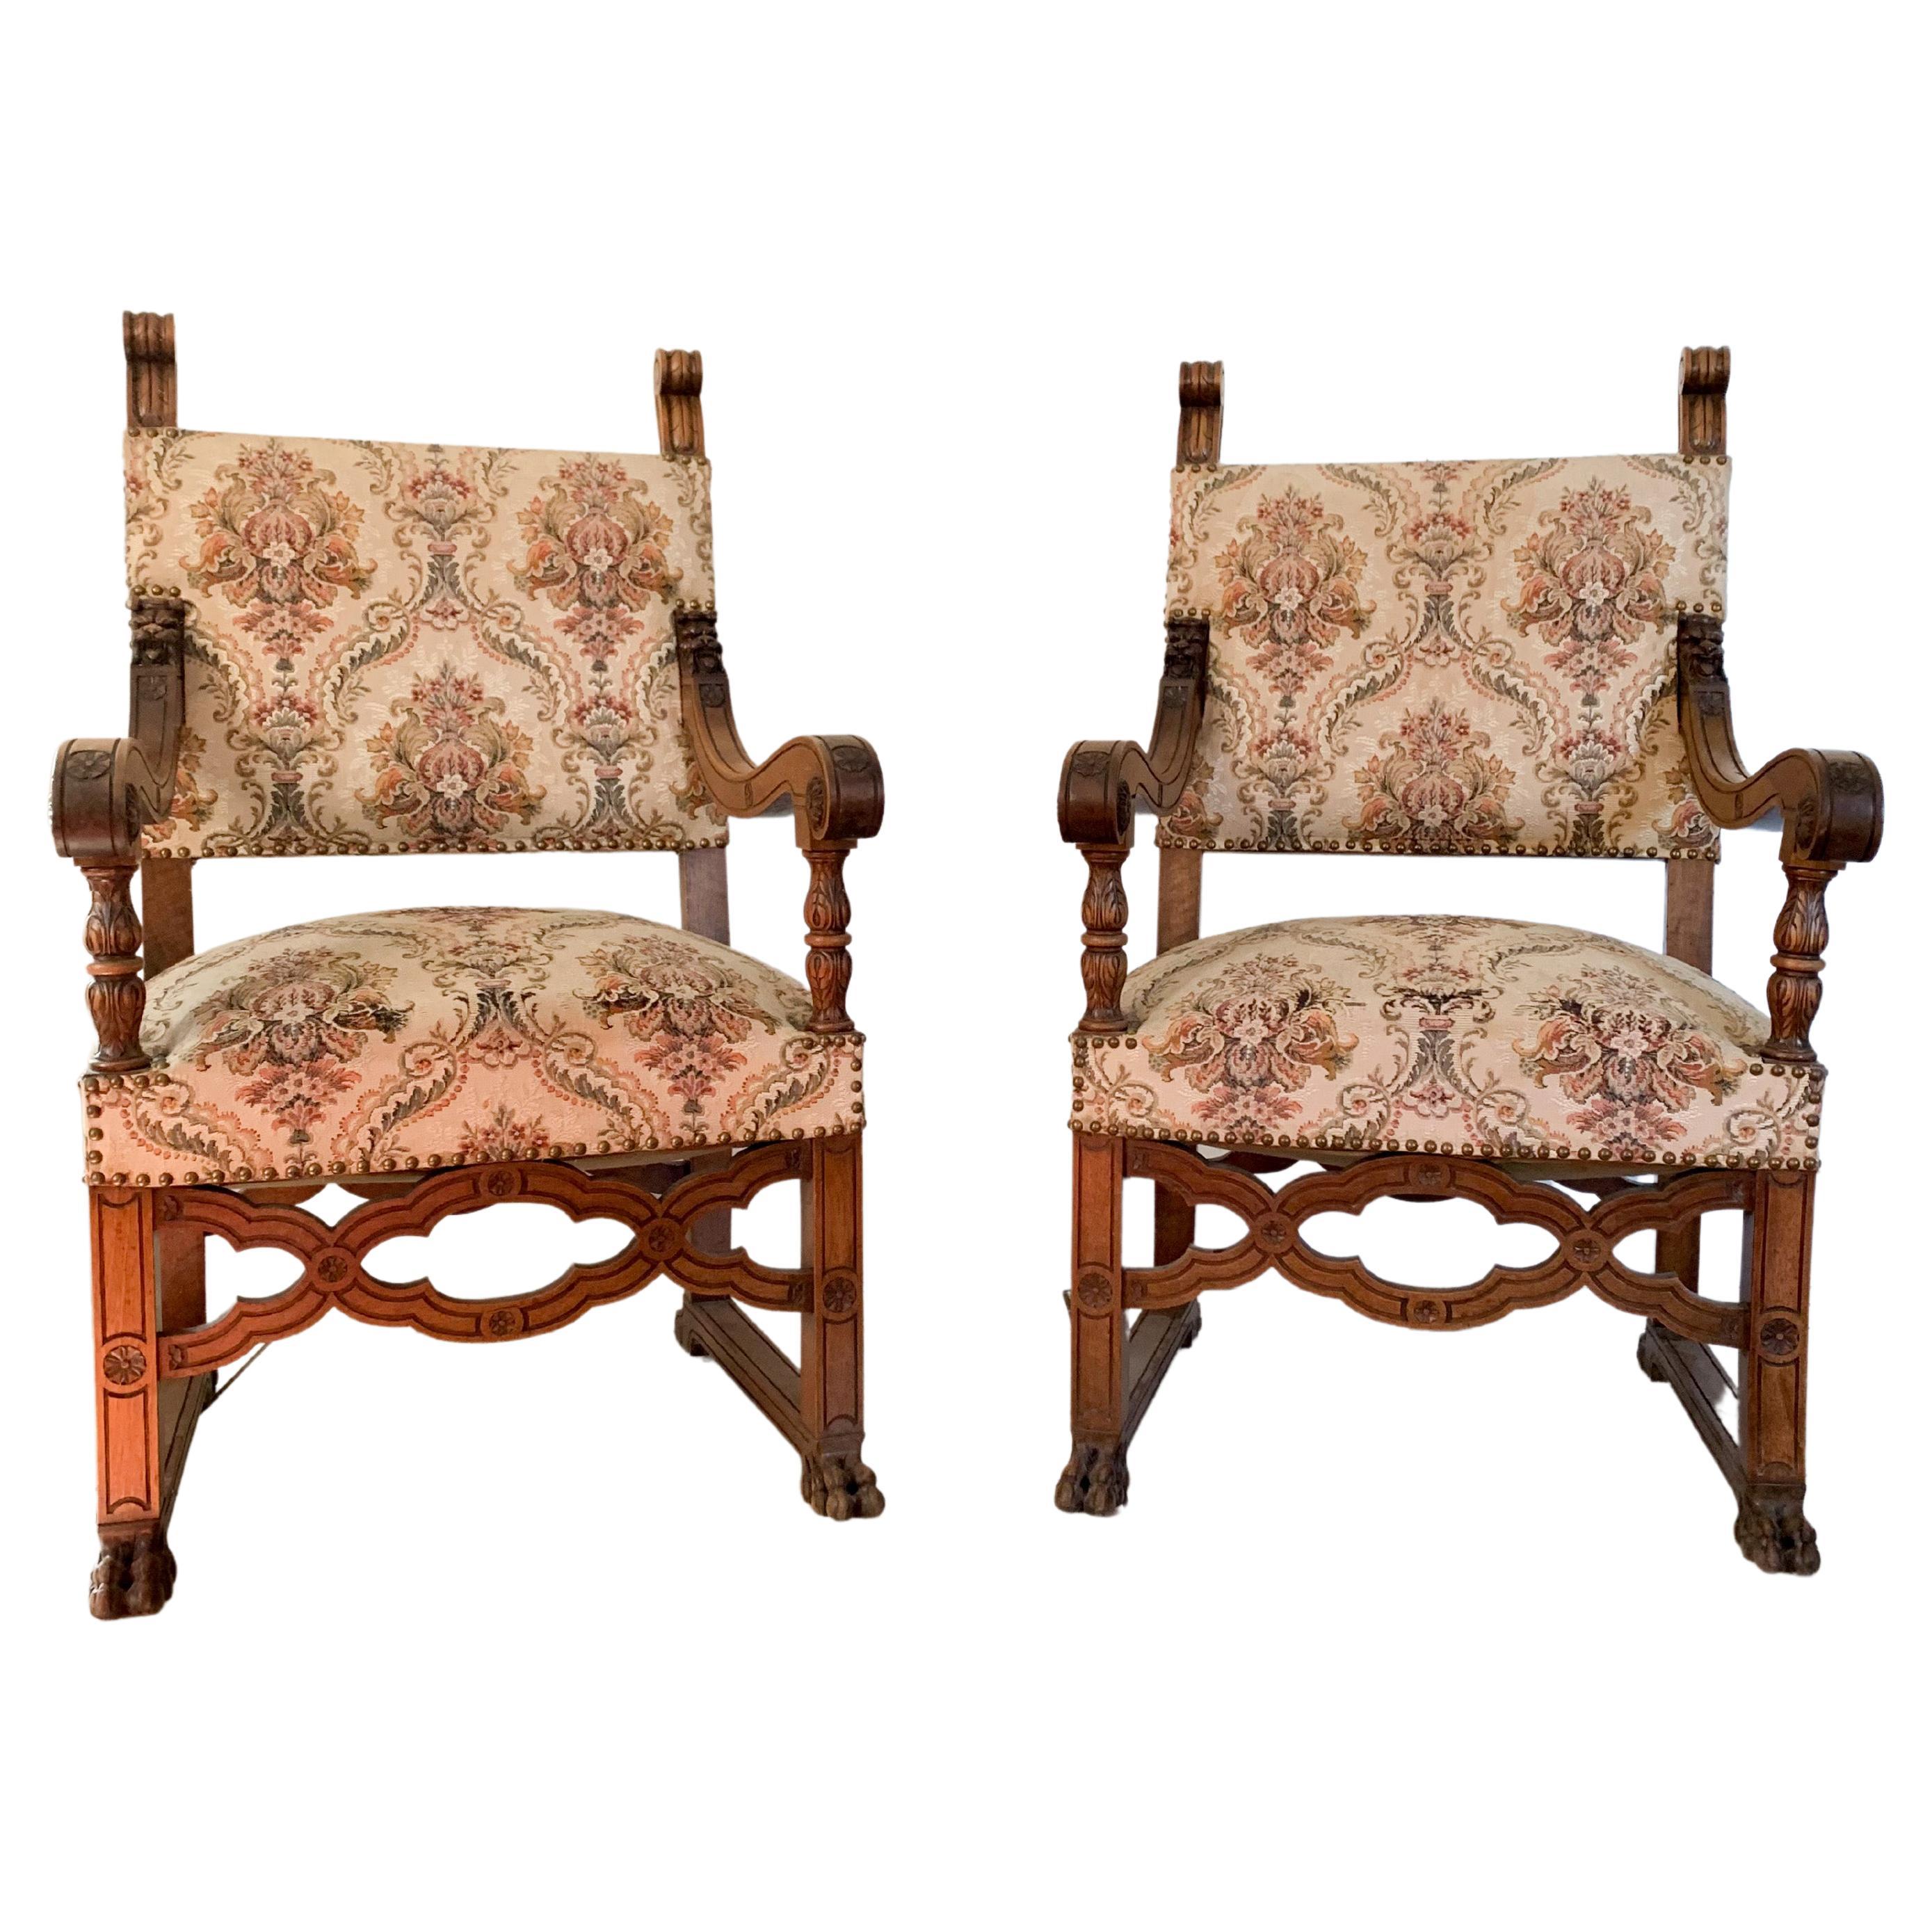 Paire de fauteuils néo-Renaissance - XIXe - France